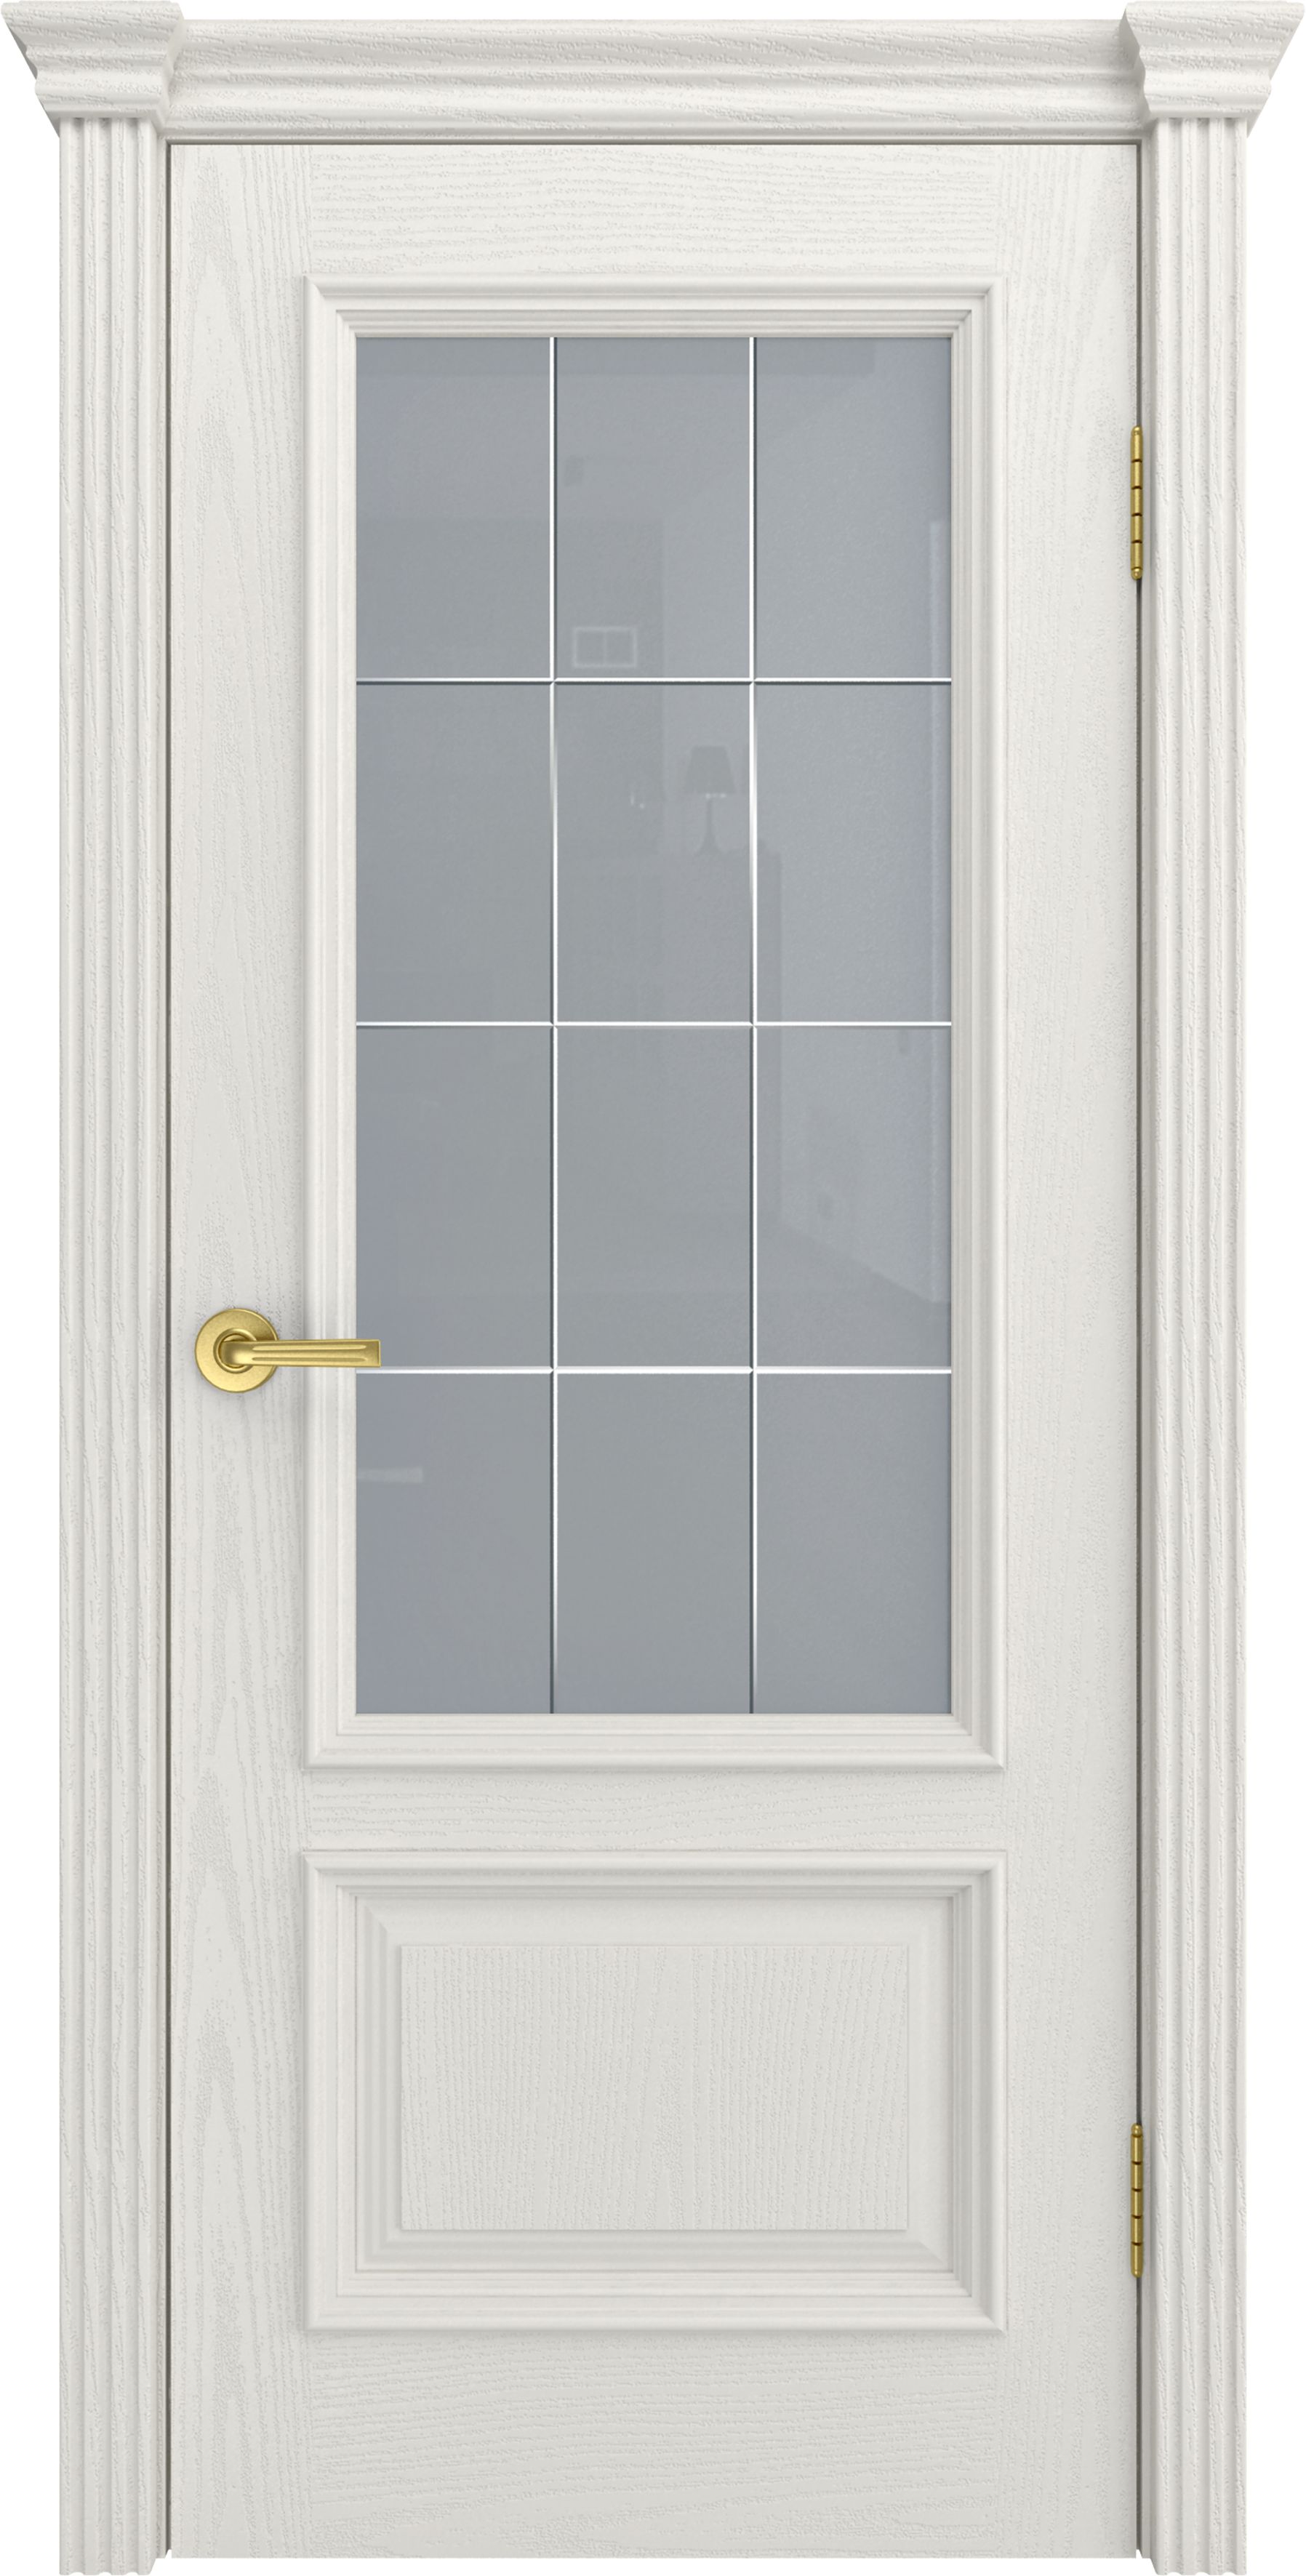 Двери шпонированные ТЕКОНА Фрейм 07 со стеклом Бьянко размер 200 х 60 см. артикул F0000045029